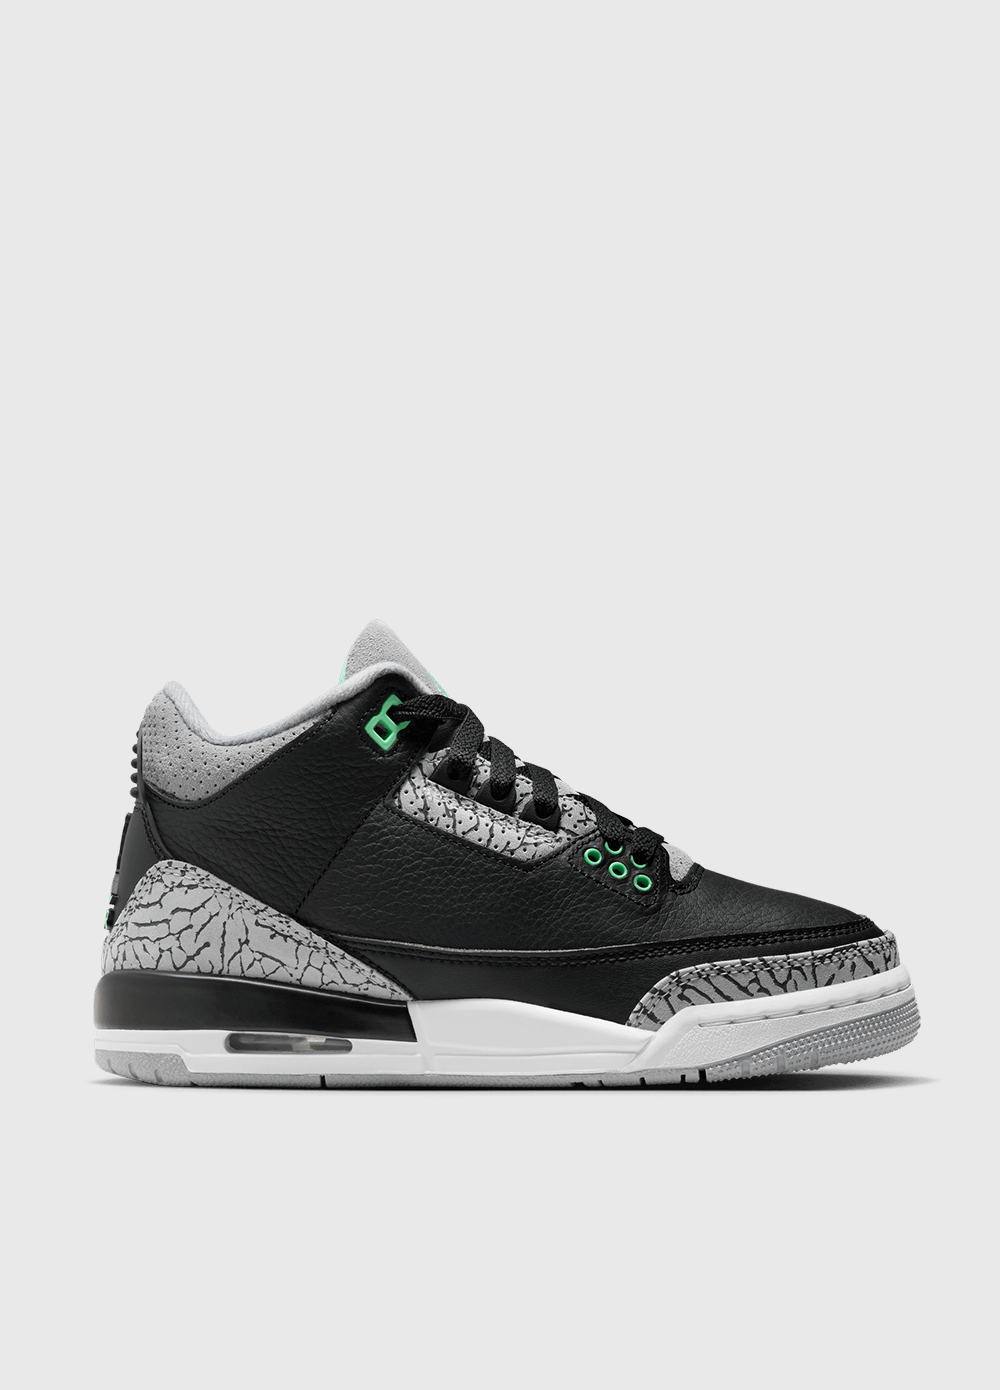 Air Jordan 3 Retro 'Green Glow' Sneakers (GS)